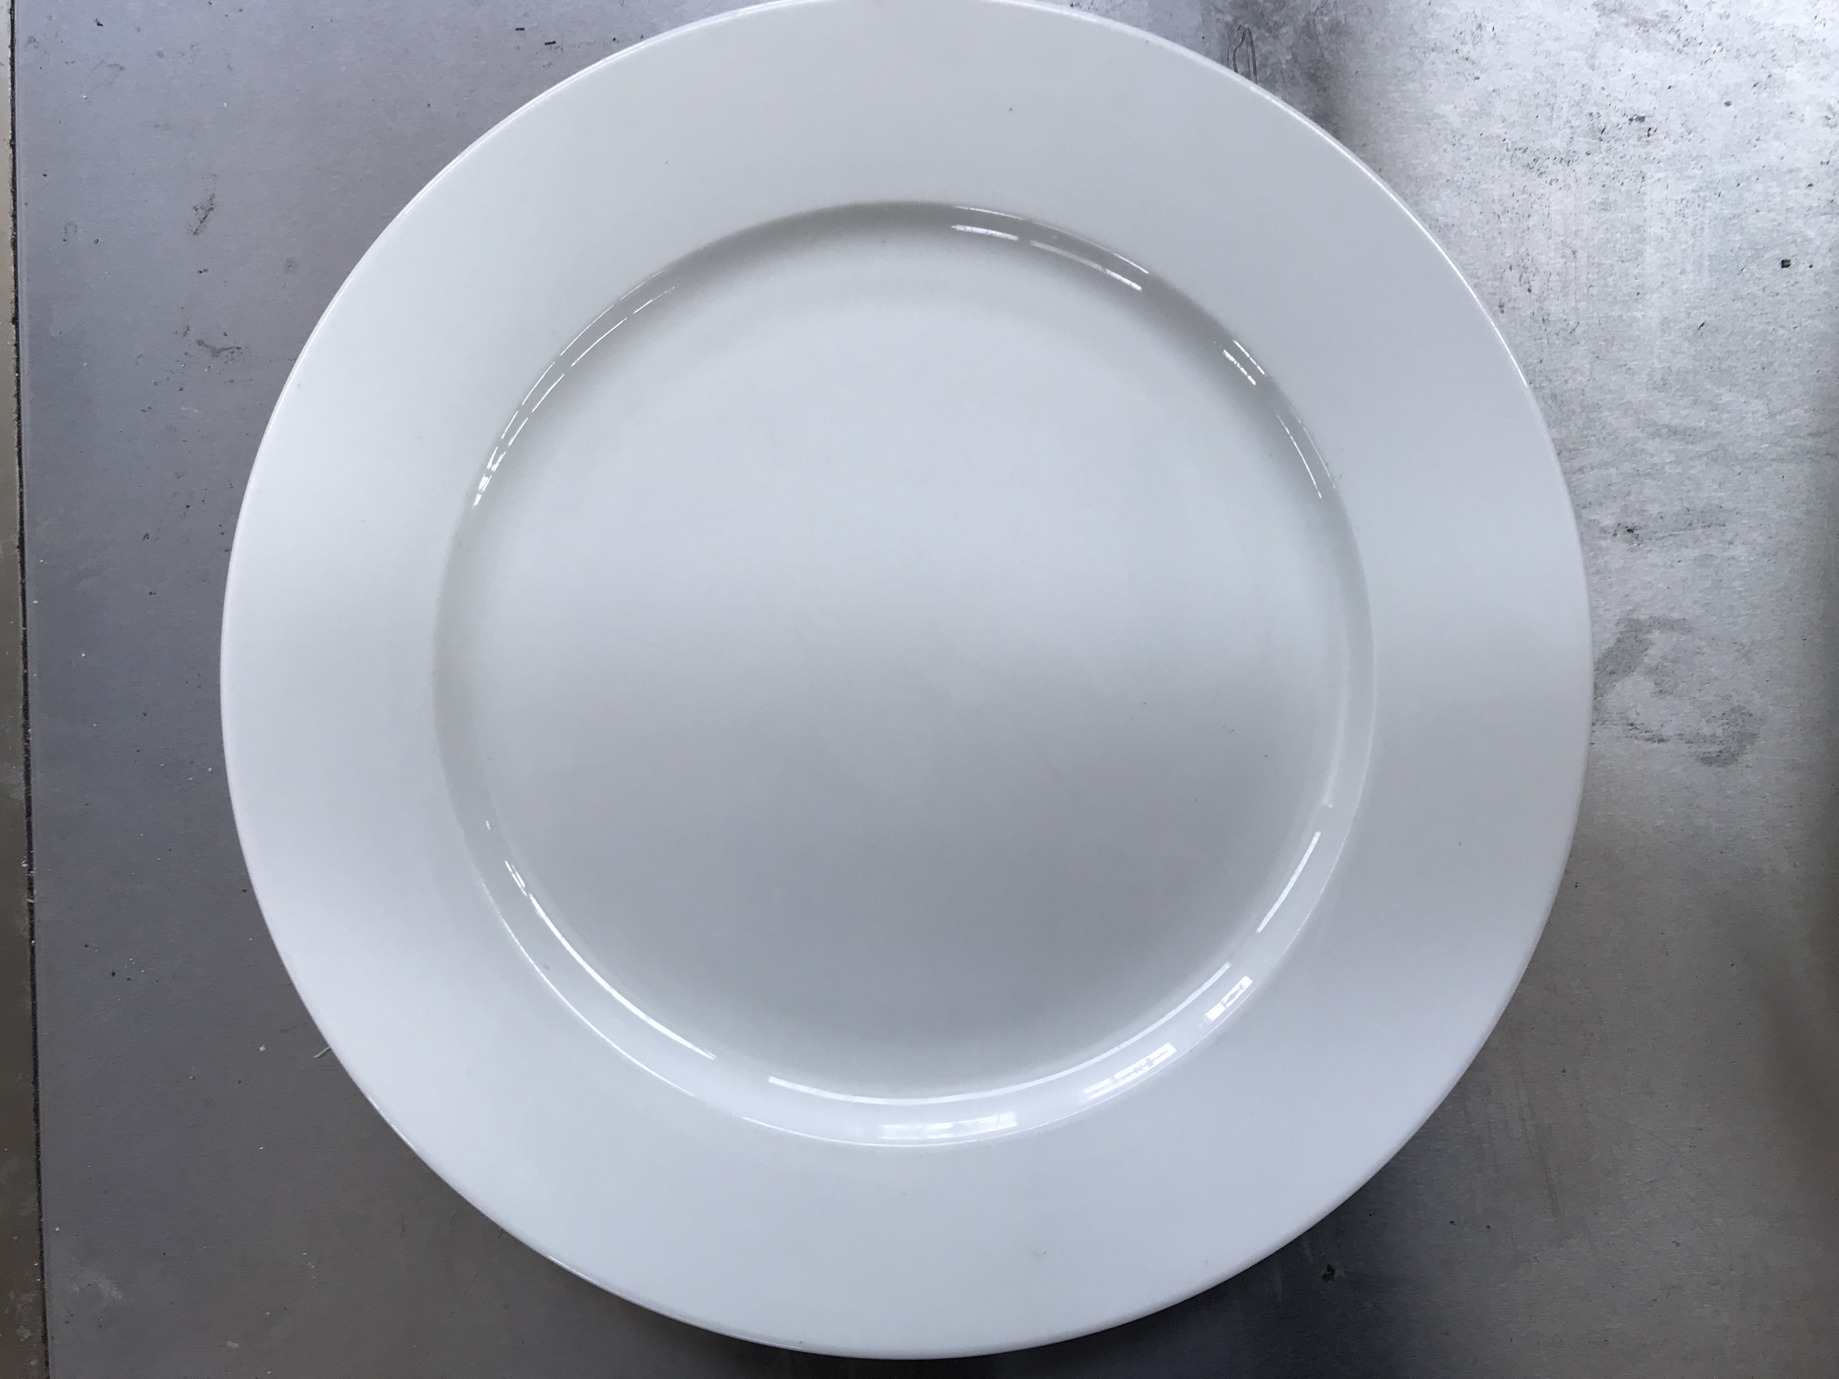 G 191-12 Teller für Antipasti, Salat und  Vorspeisen.;Flach,Porzellan,weiss,Durchmesser 225 mm  